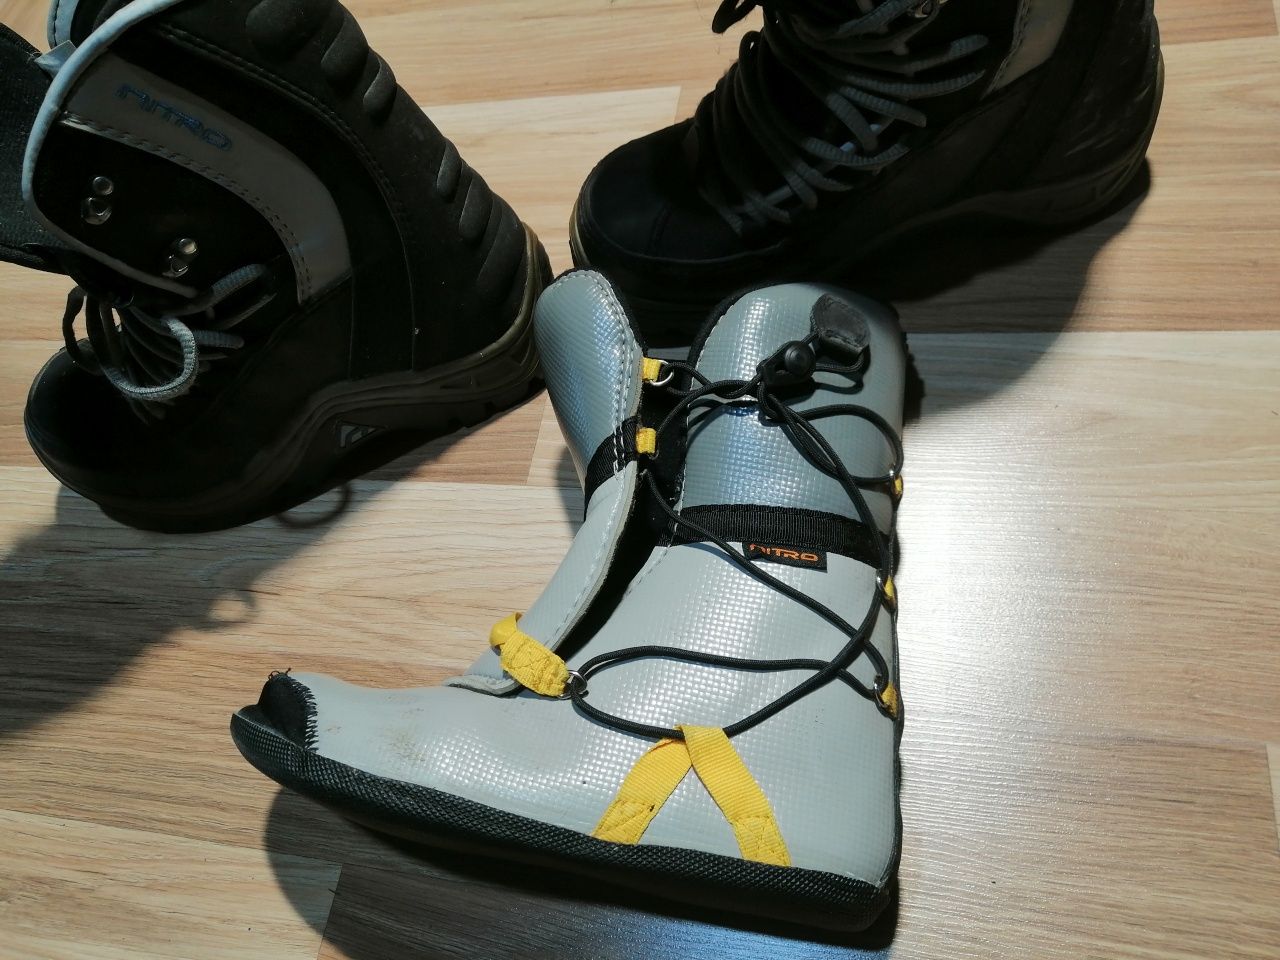 Buty snowboardowe Nitro wrap liner w rozmiarze 41